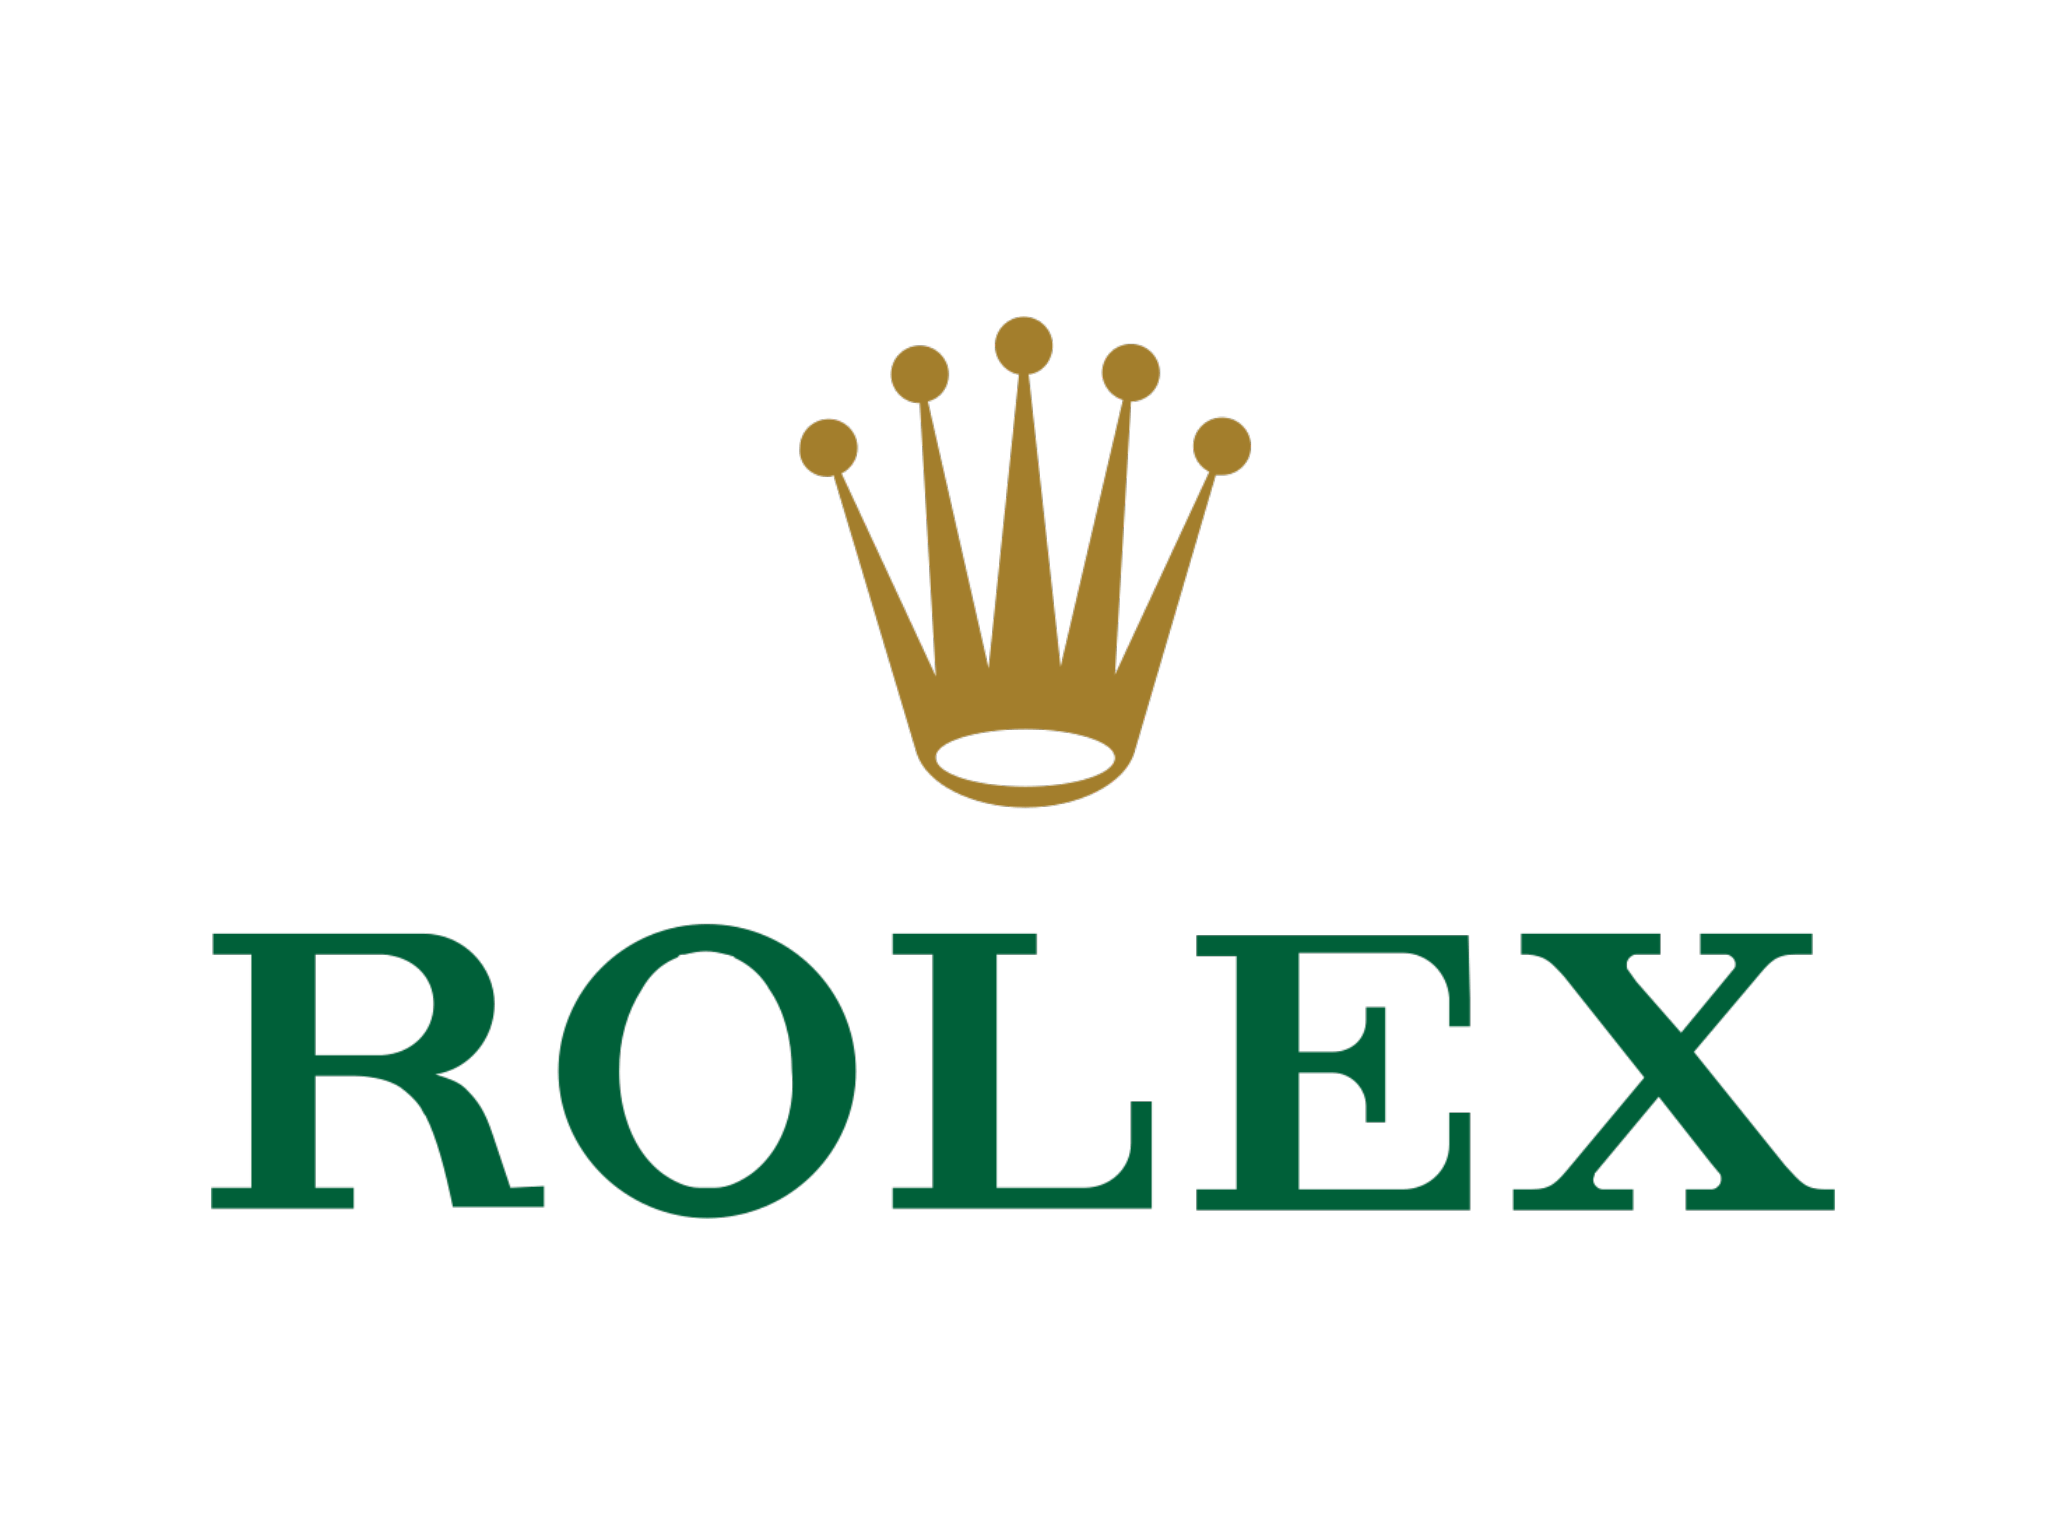 "Rolex"